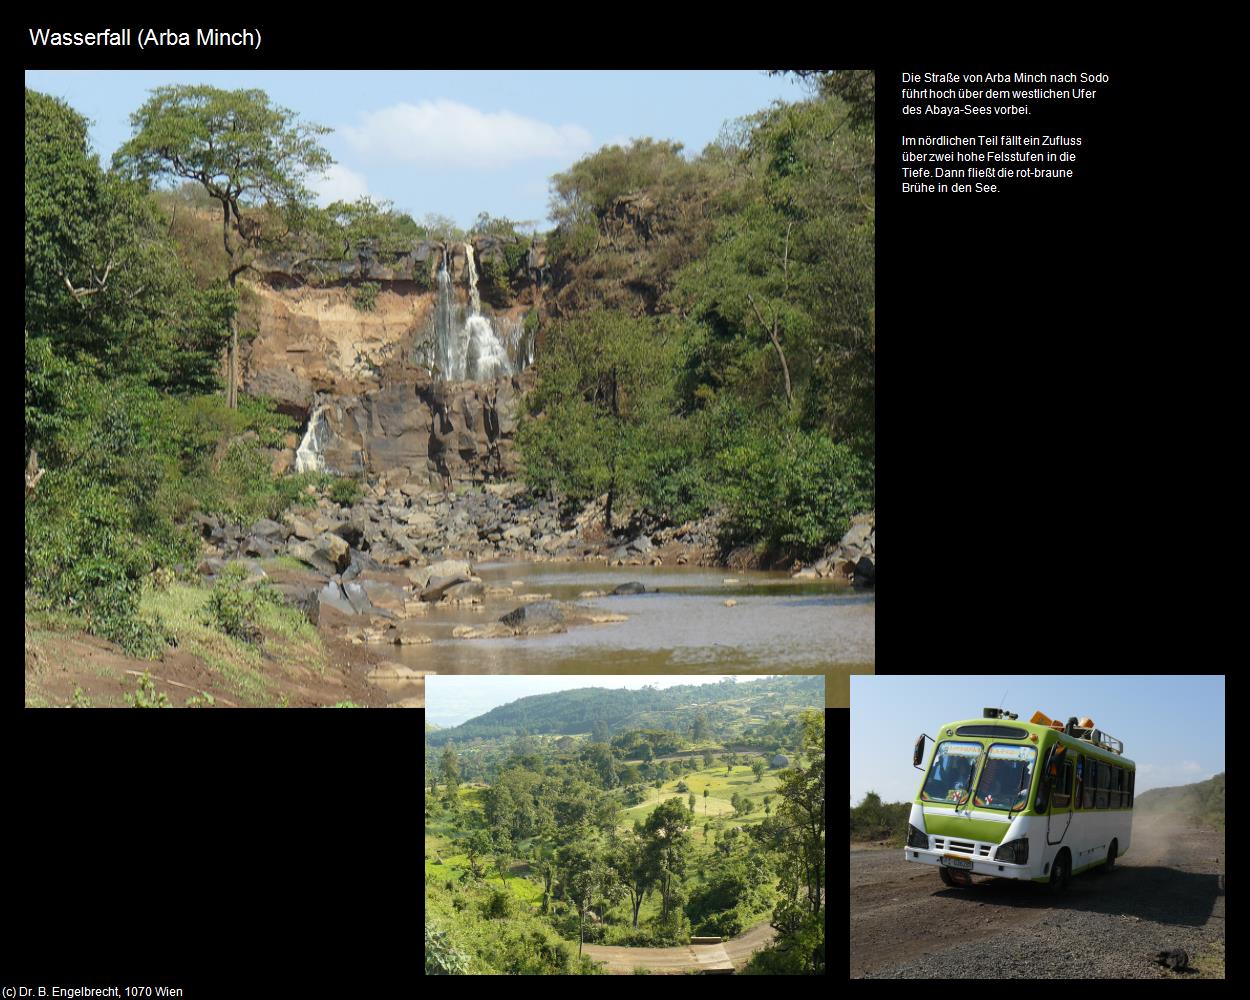 Wasserfall (Arba Minch) in Äthiopien